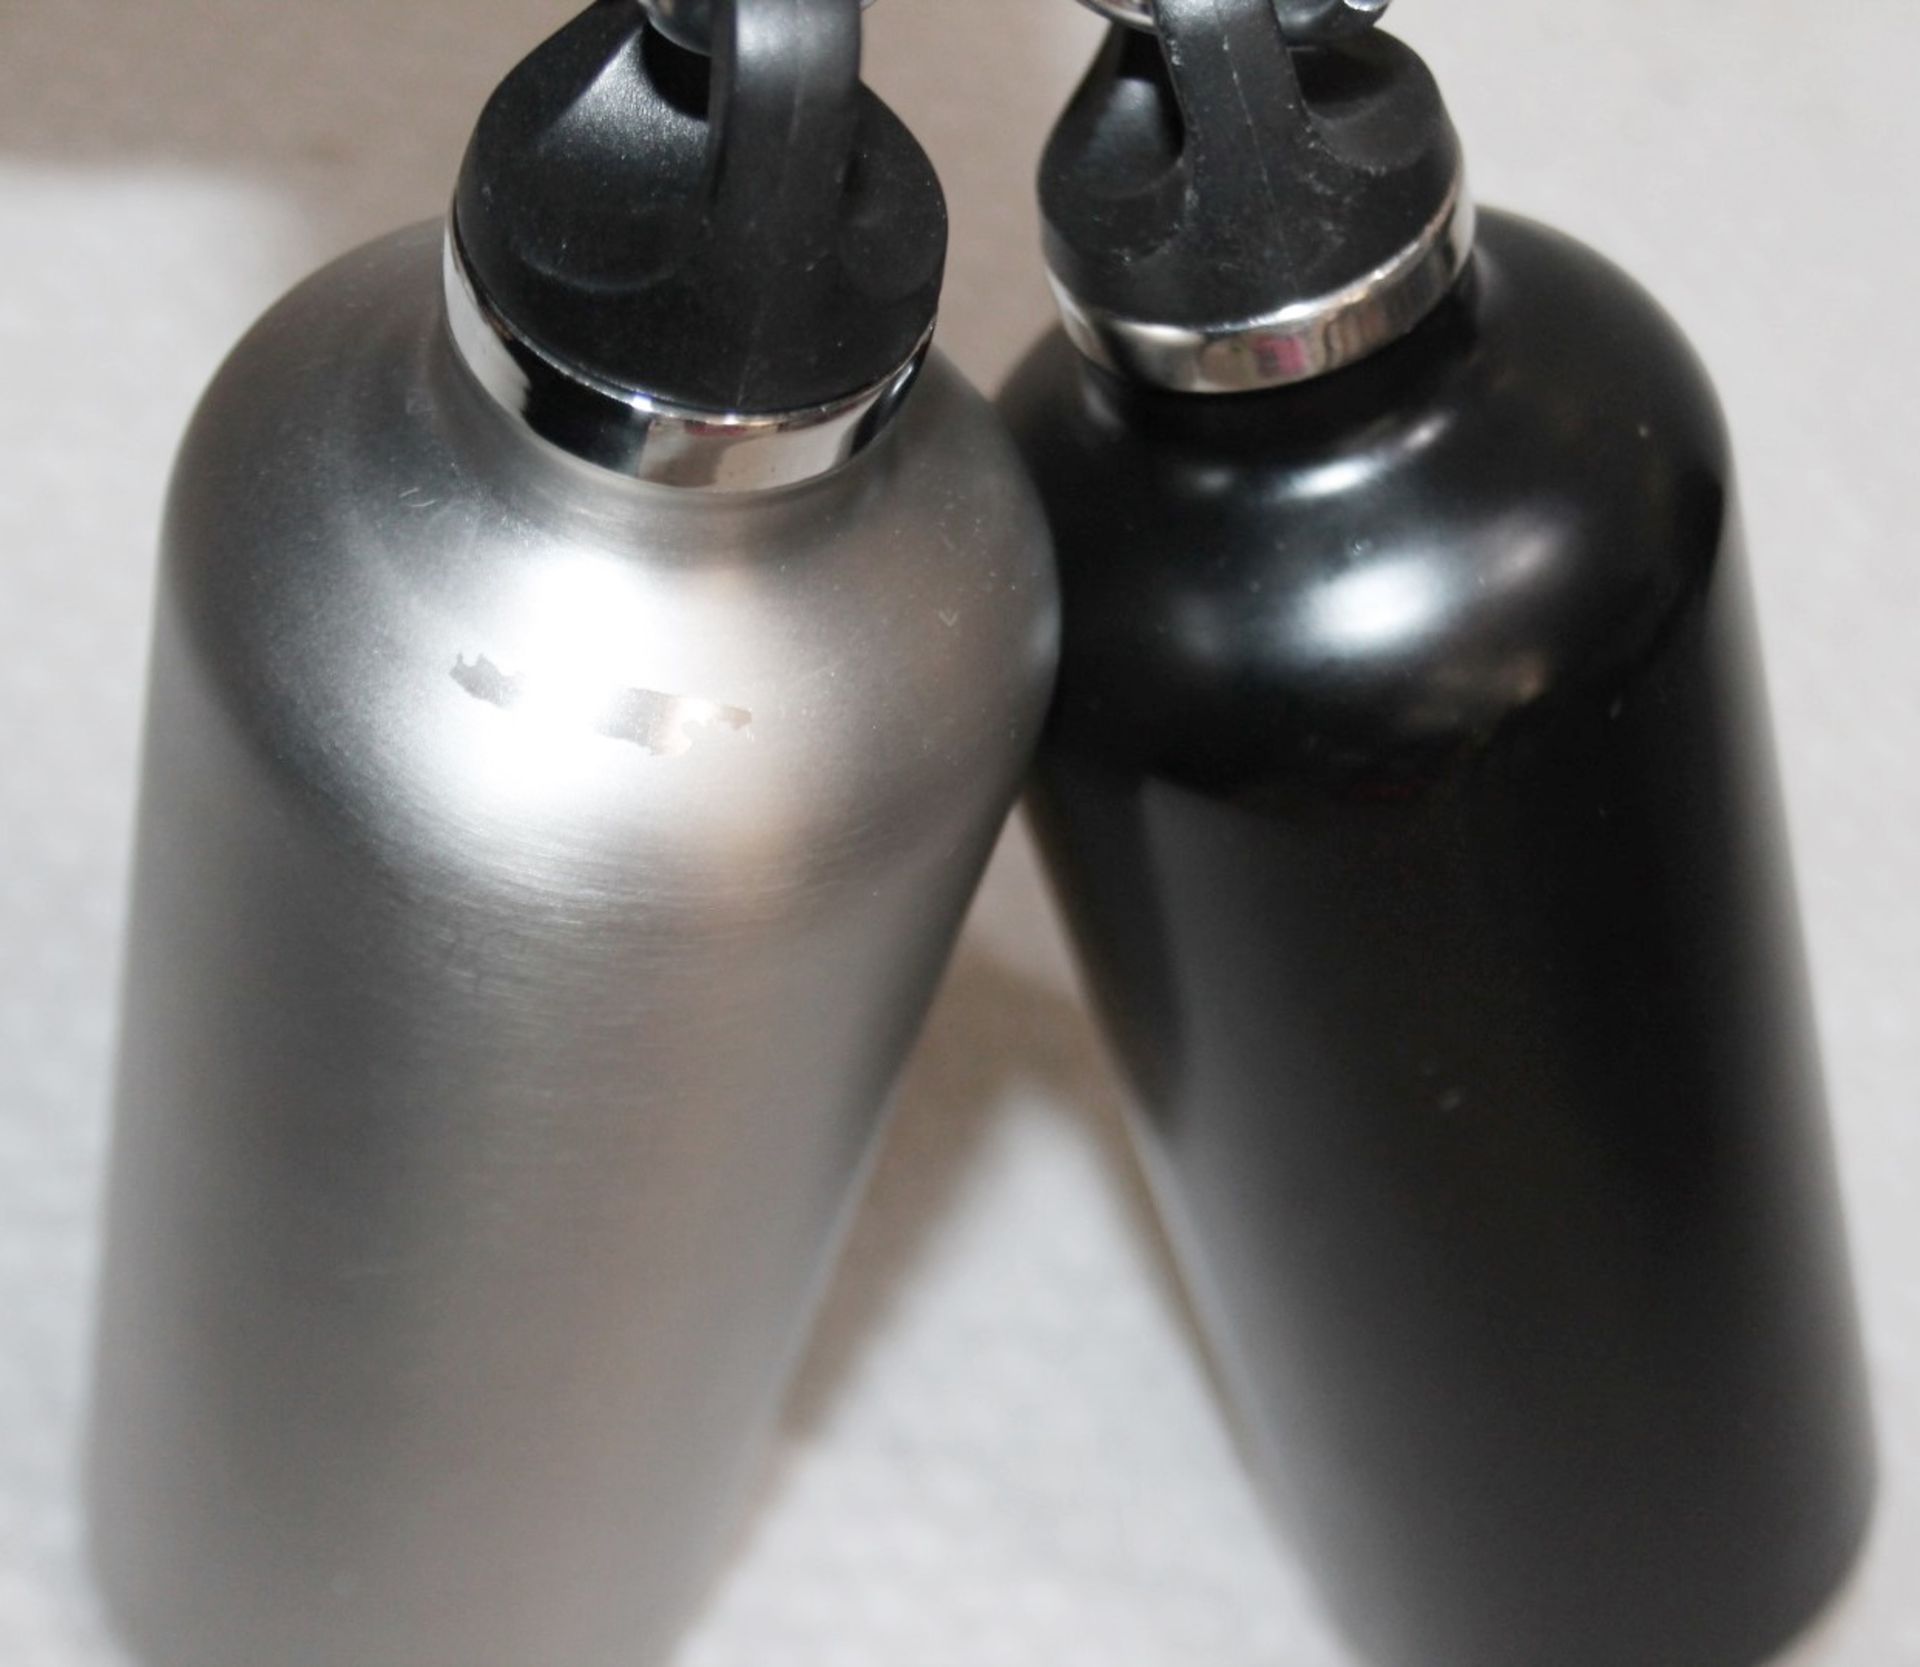 2 x PRADA Branded Borraccia Stainless Steel Thermal Bottles (500ml) - Ex-Display - Ref: HAS564/ - Image 3 of 7